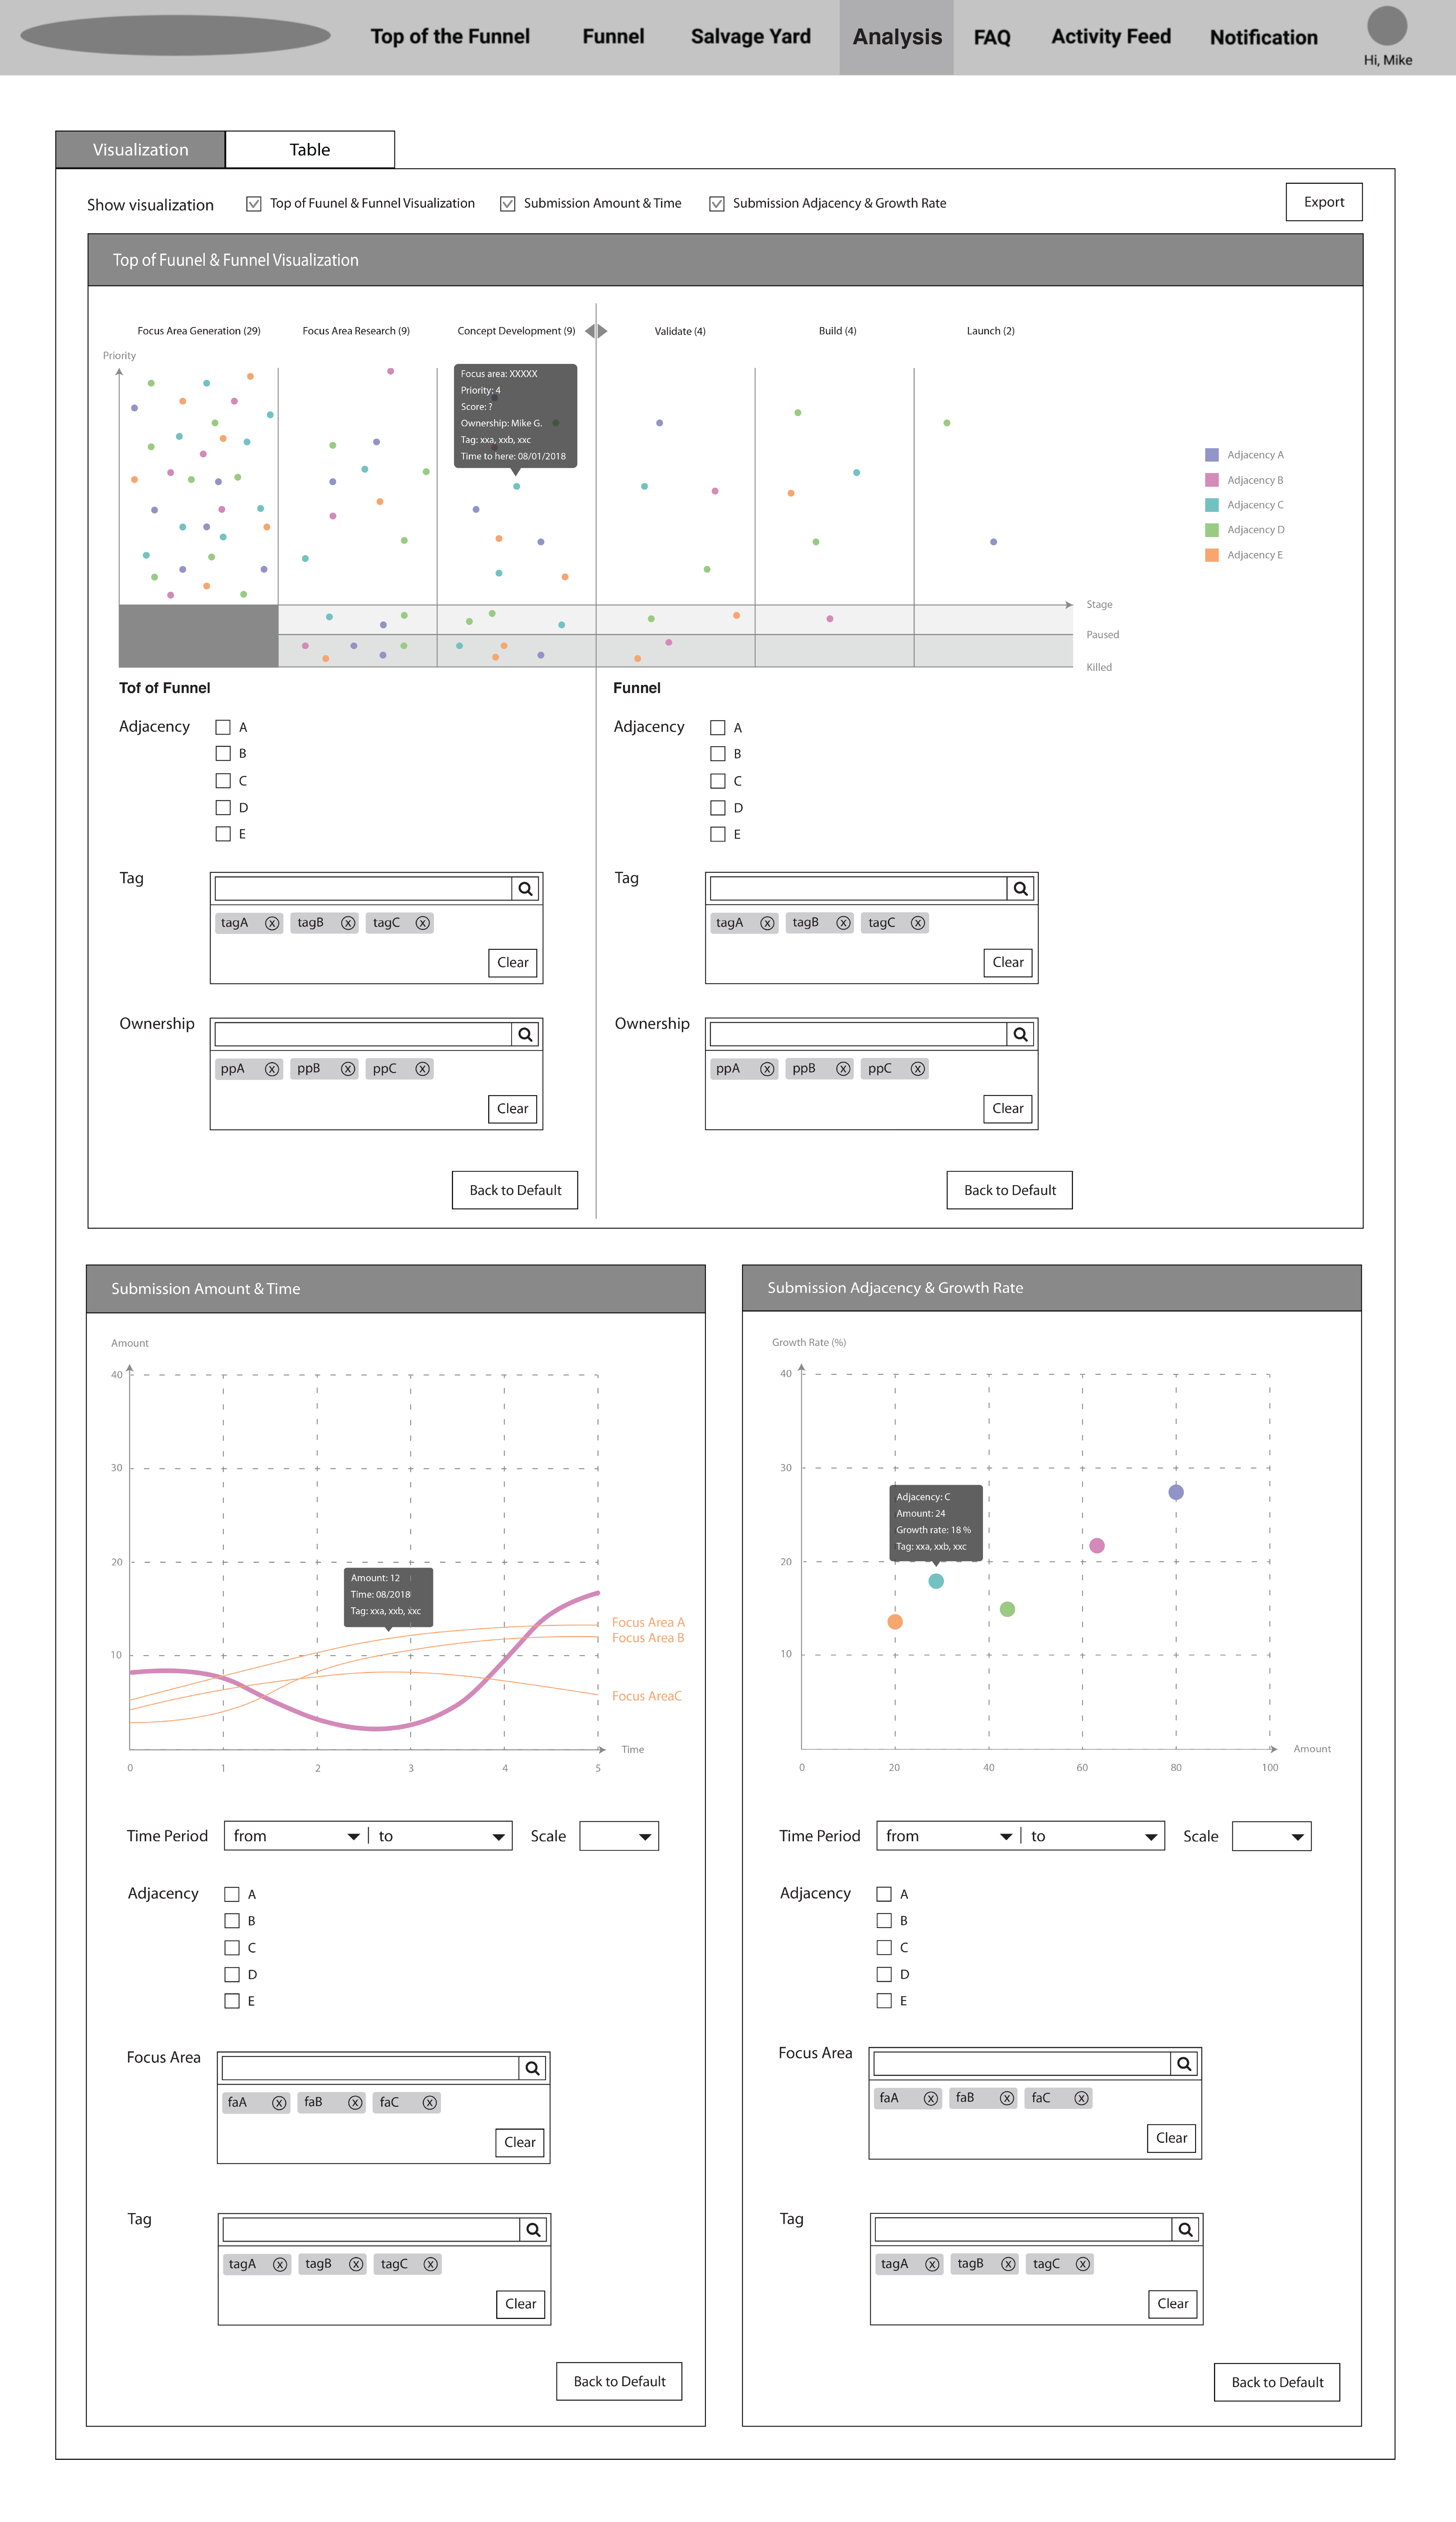 Analysis Page - Visualization